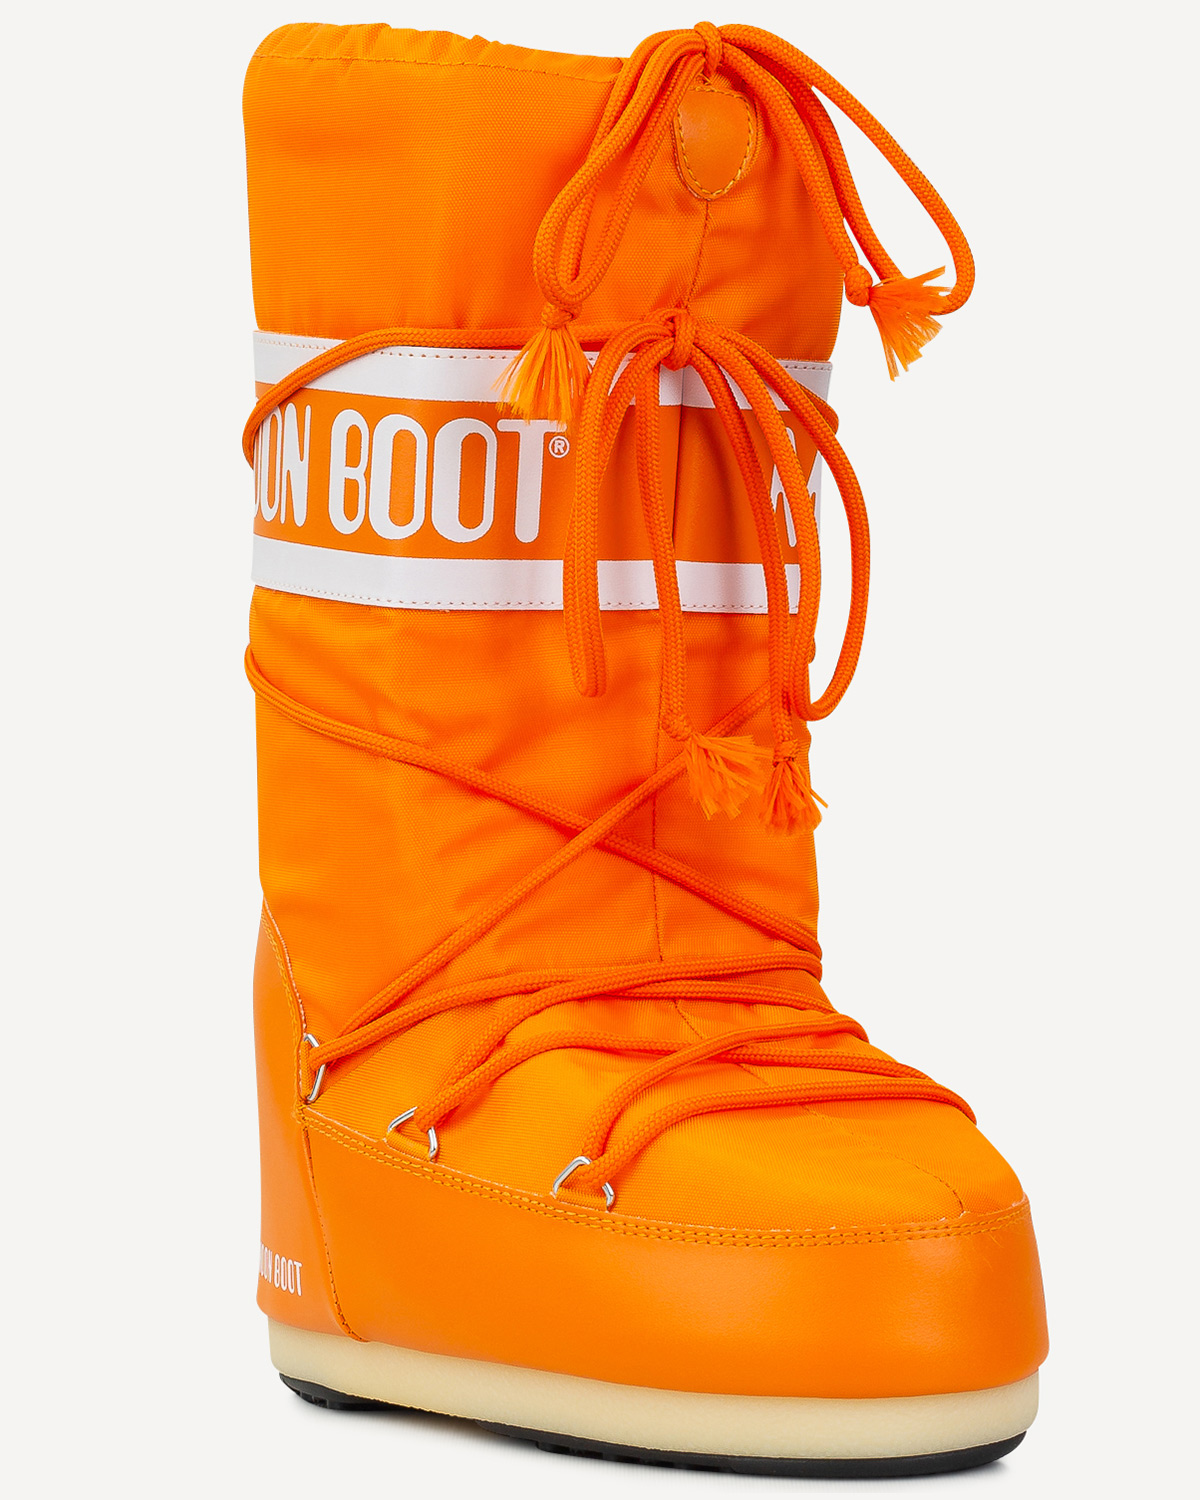 Γυναίκα - Μπότες - Μποτάκια - Moonboot Πορτοκαλί